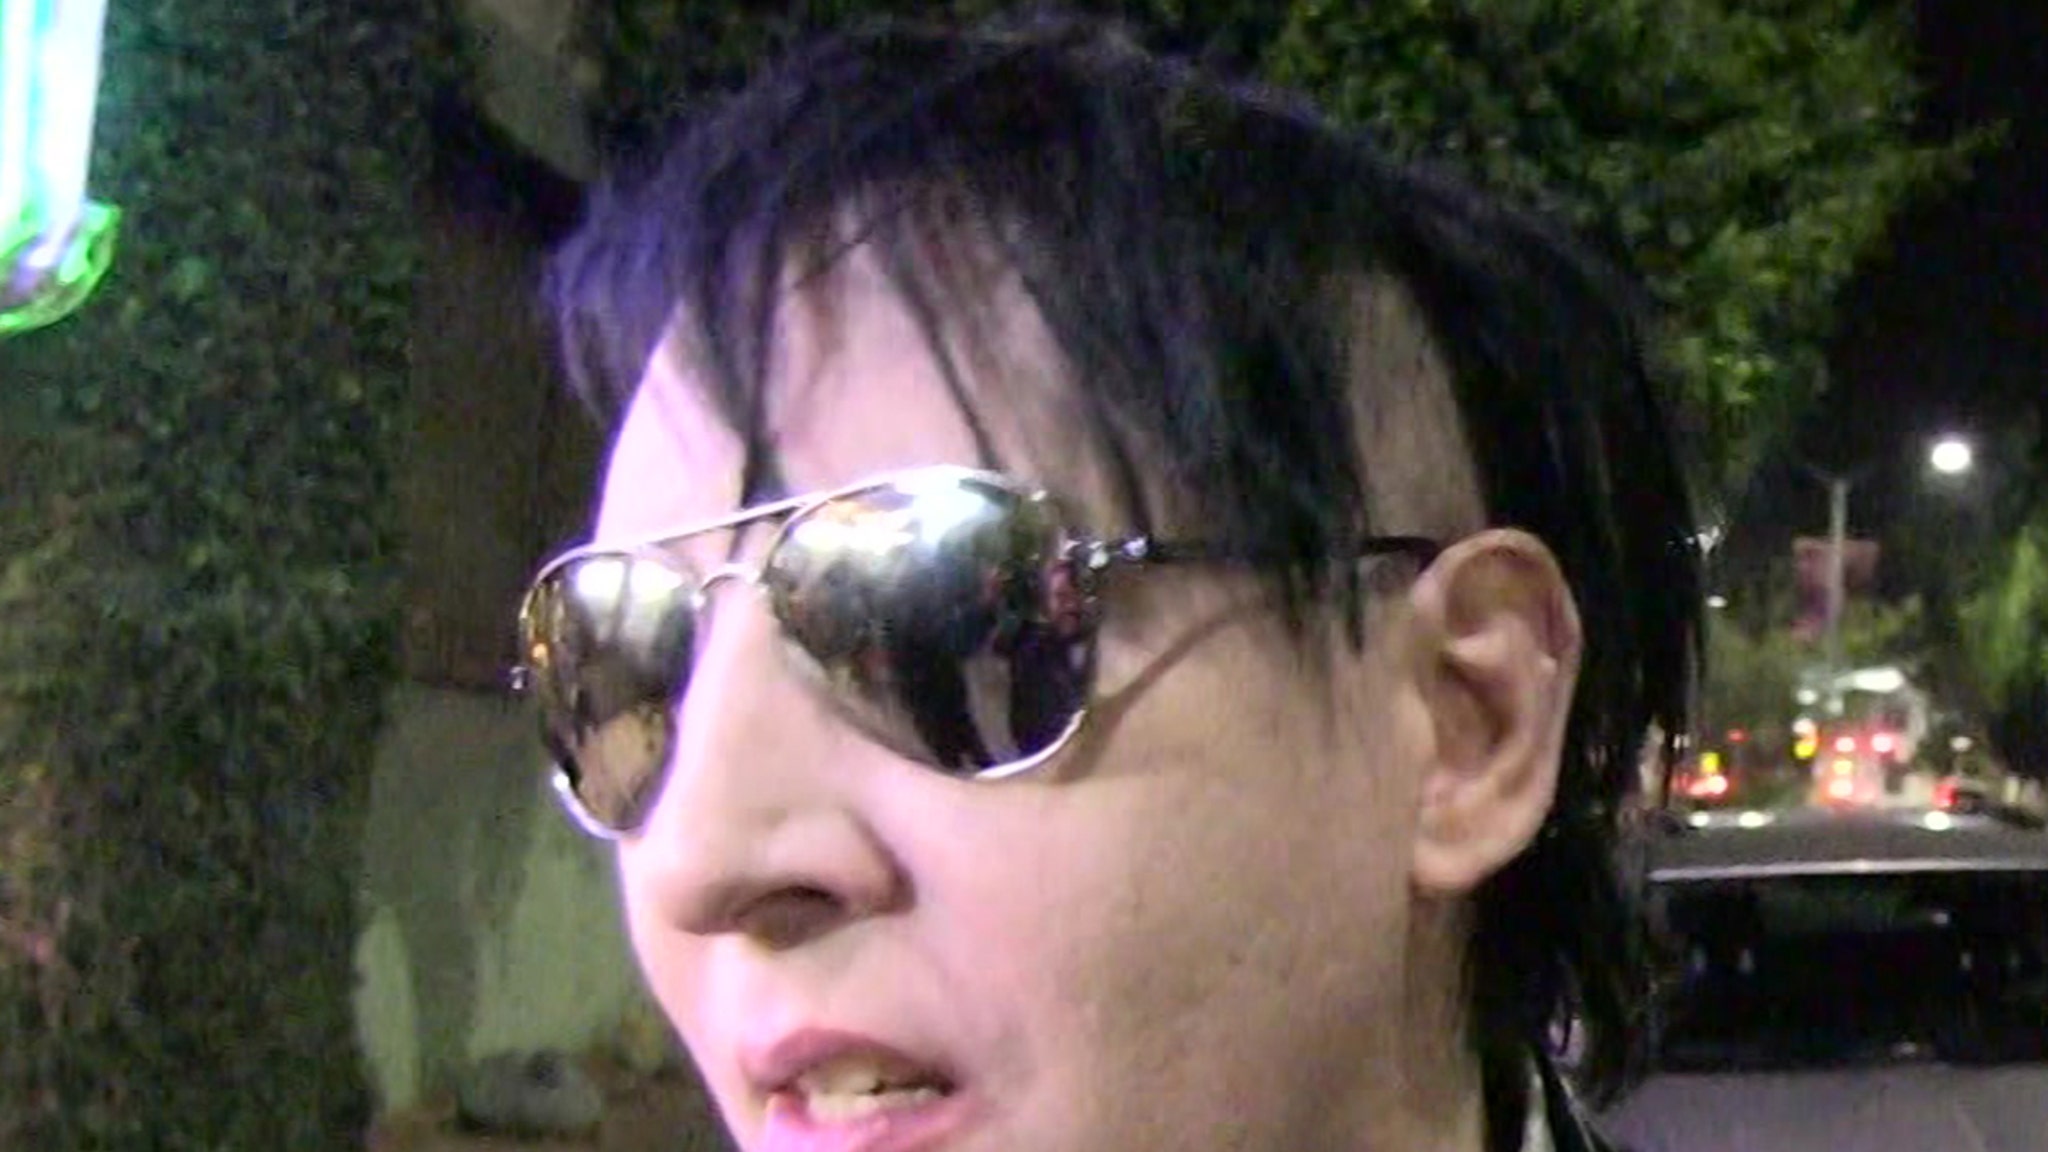 Il caso di violenza sessuale di Marilyn Manson potrebbe non costituire un'accusa